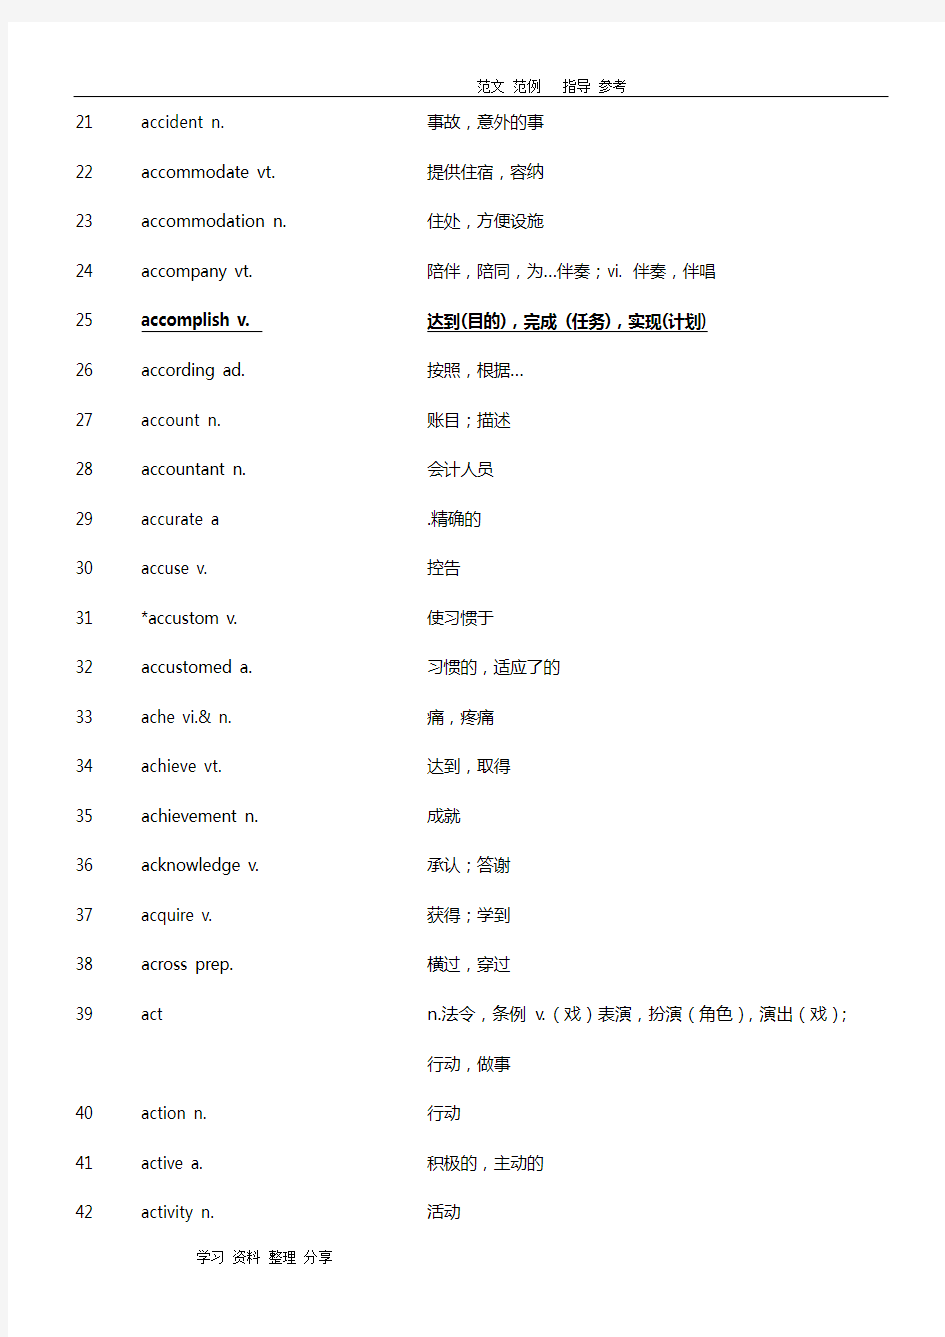 2018年最新上海高考英语考纲词汇表[完整版]